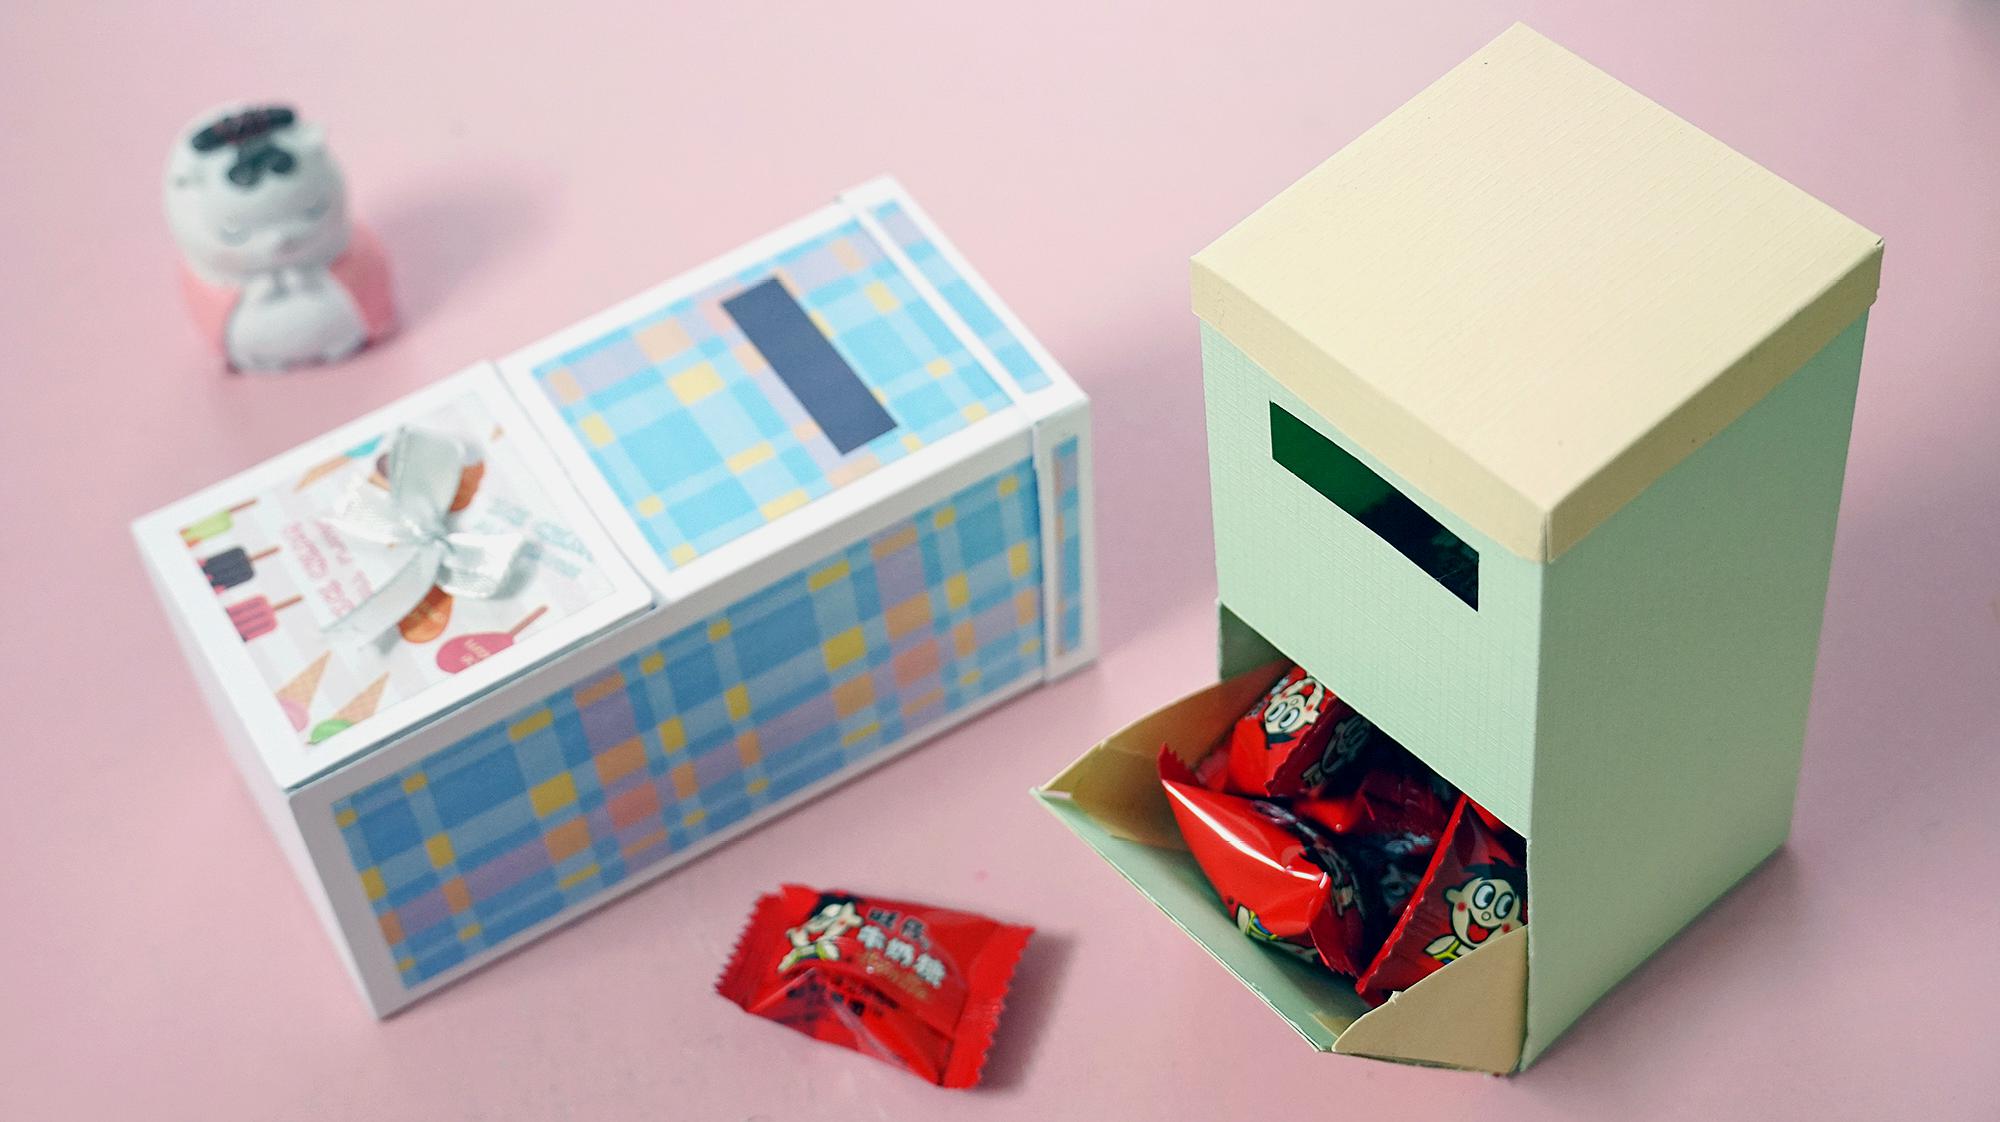 来做个简约版的糖果机,一张卡纸完成,简单又好看!